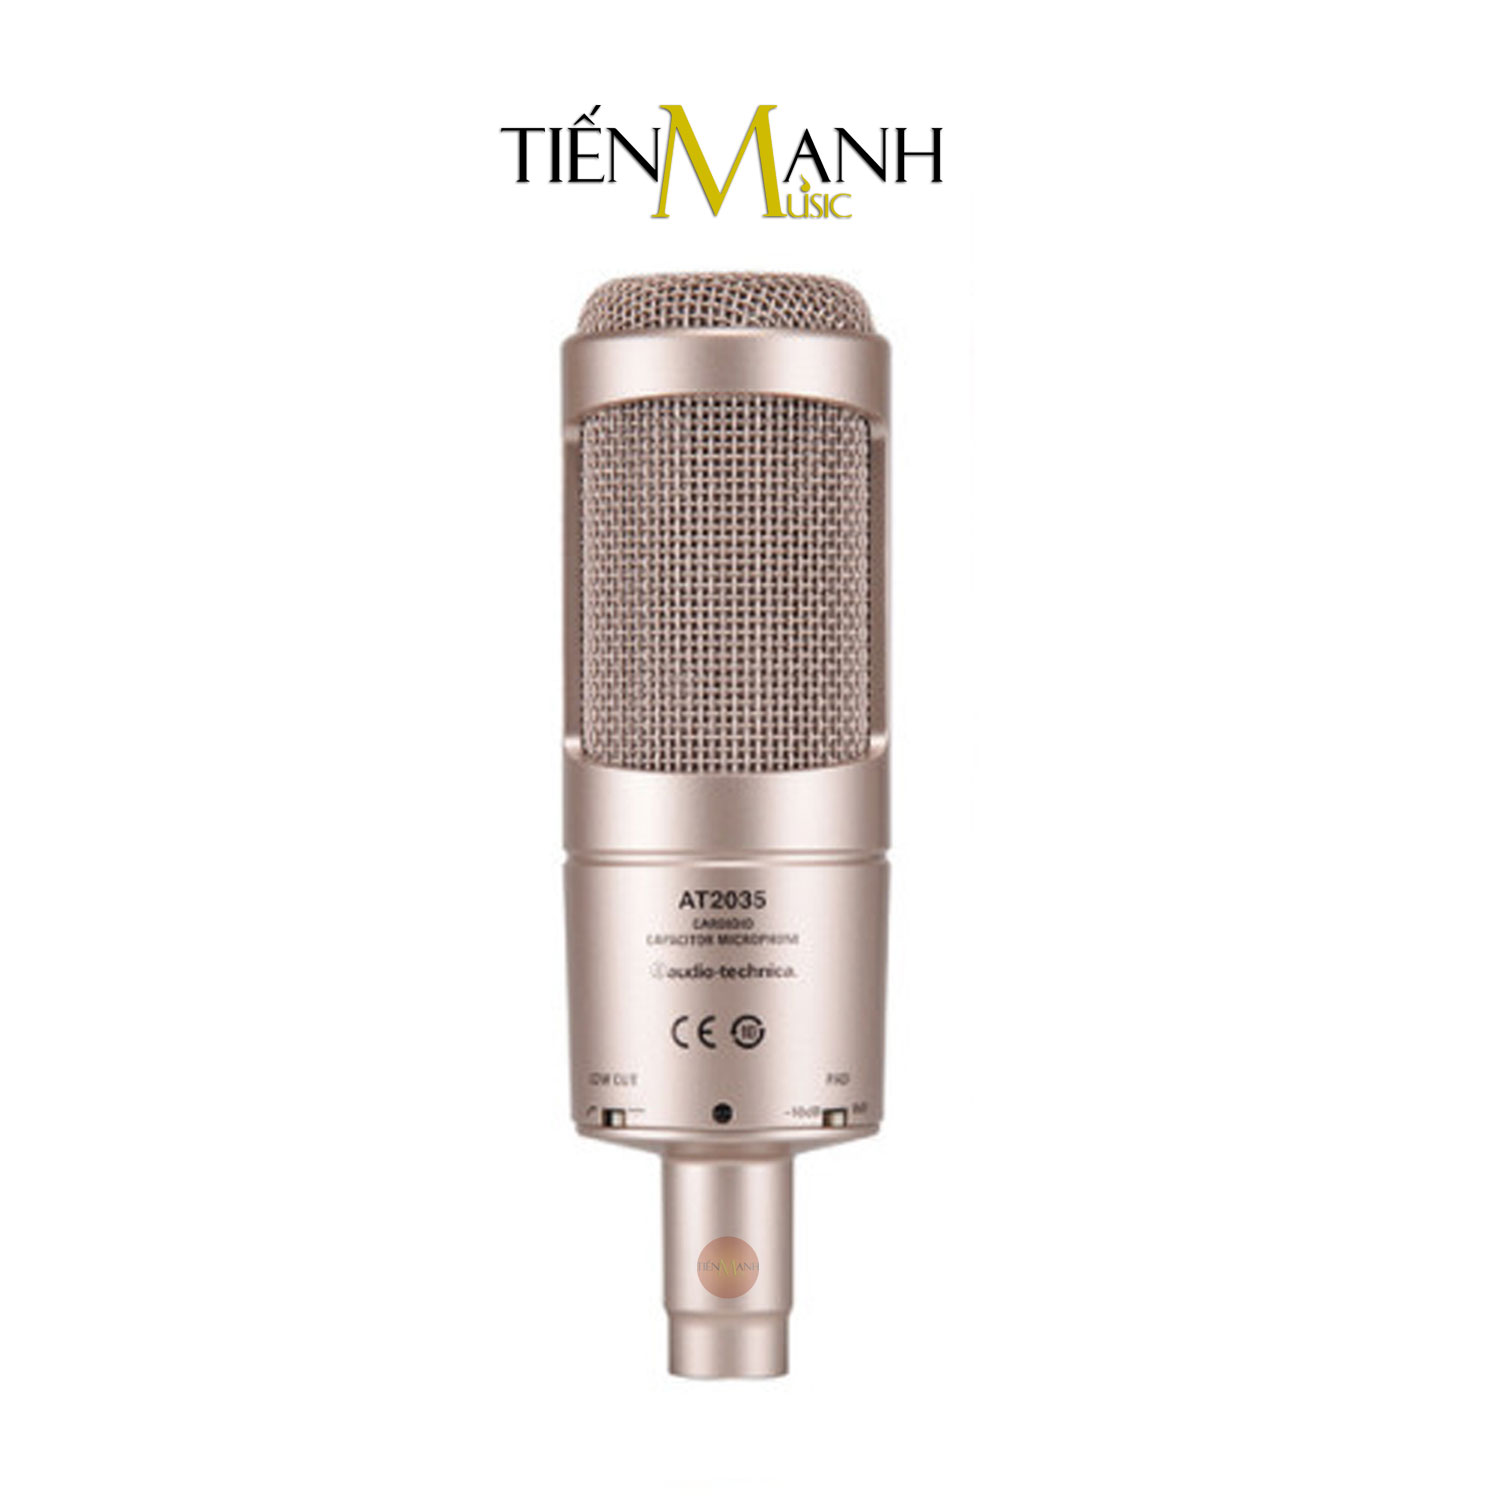 Kich-thuoc-Micro-Audio-Technica-AT2035-Mau Gold.jpg